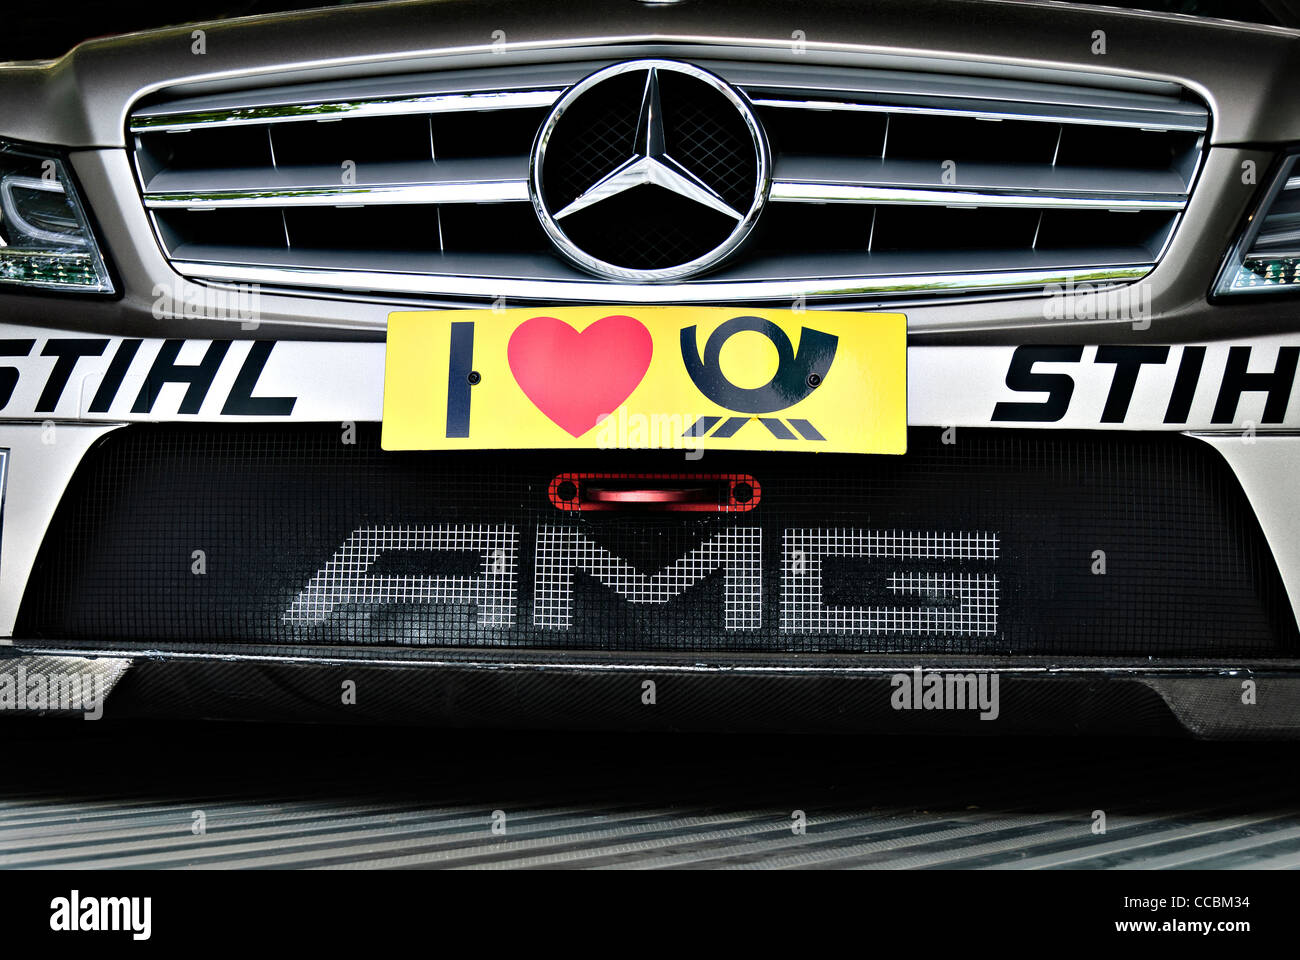 DTM AMG Mercedes race car Stock Photo